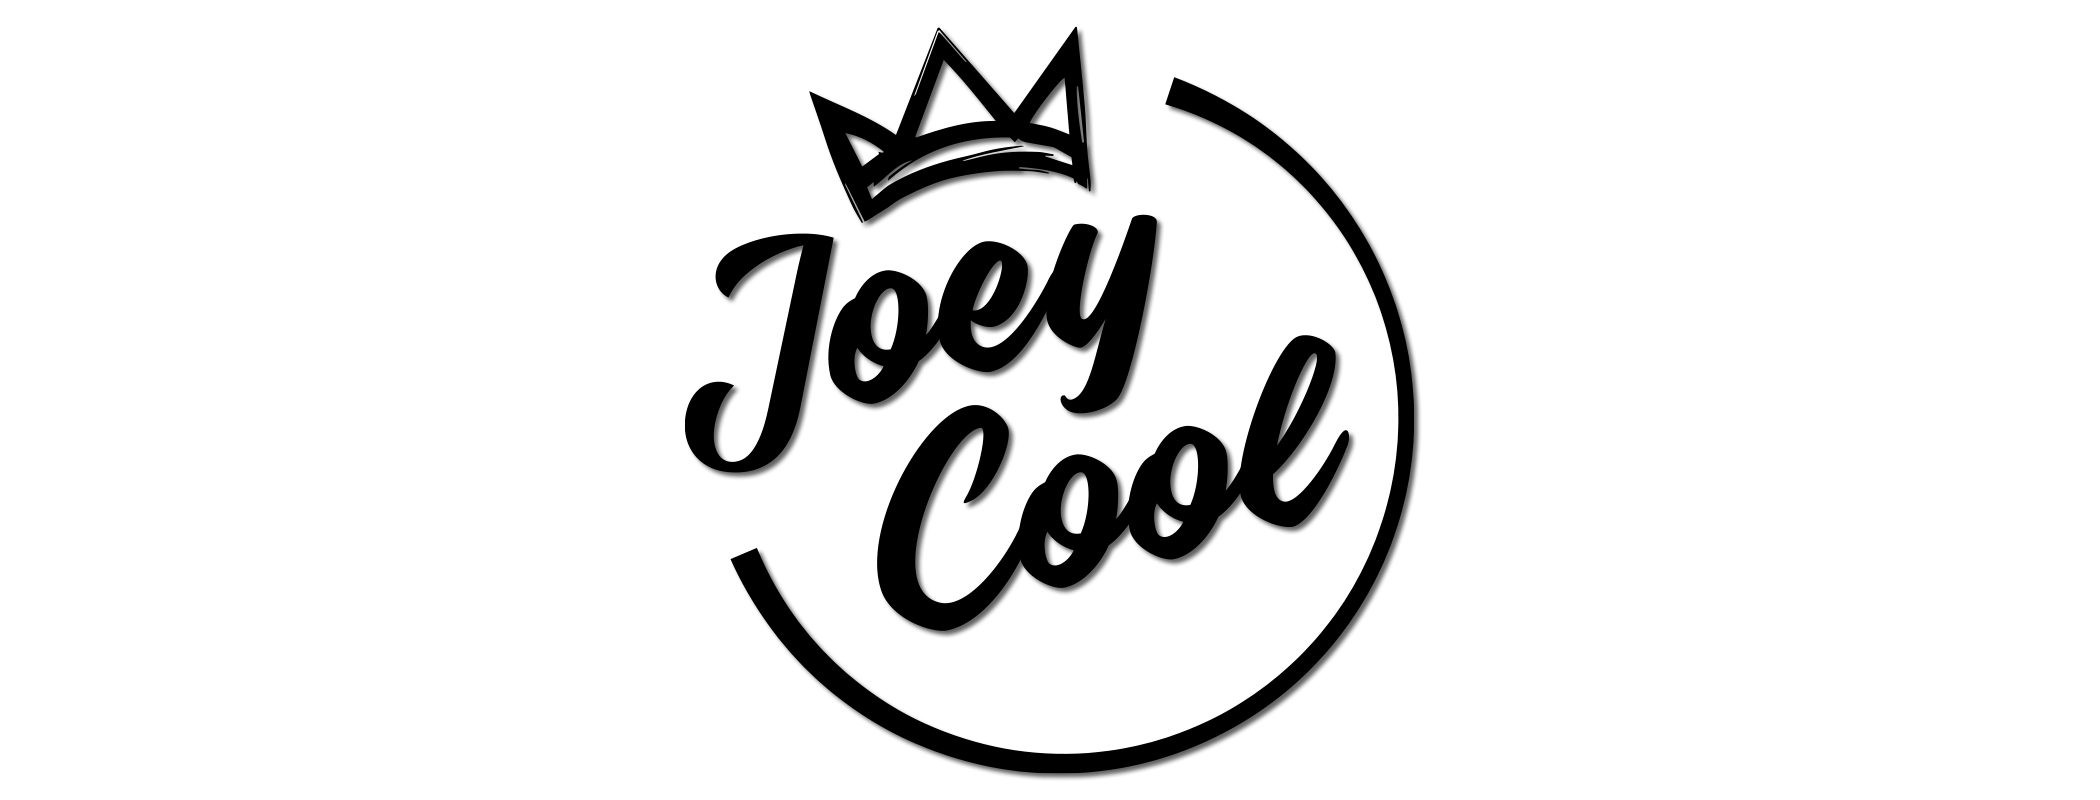 Joey Cool